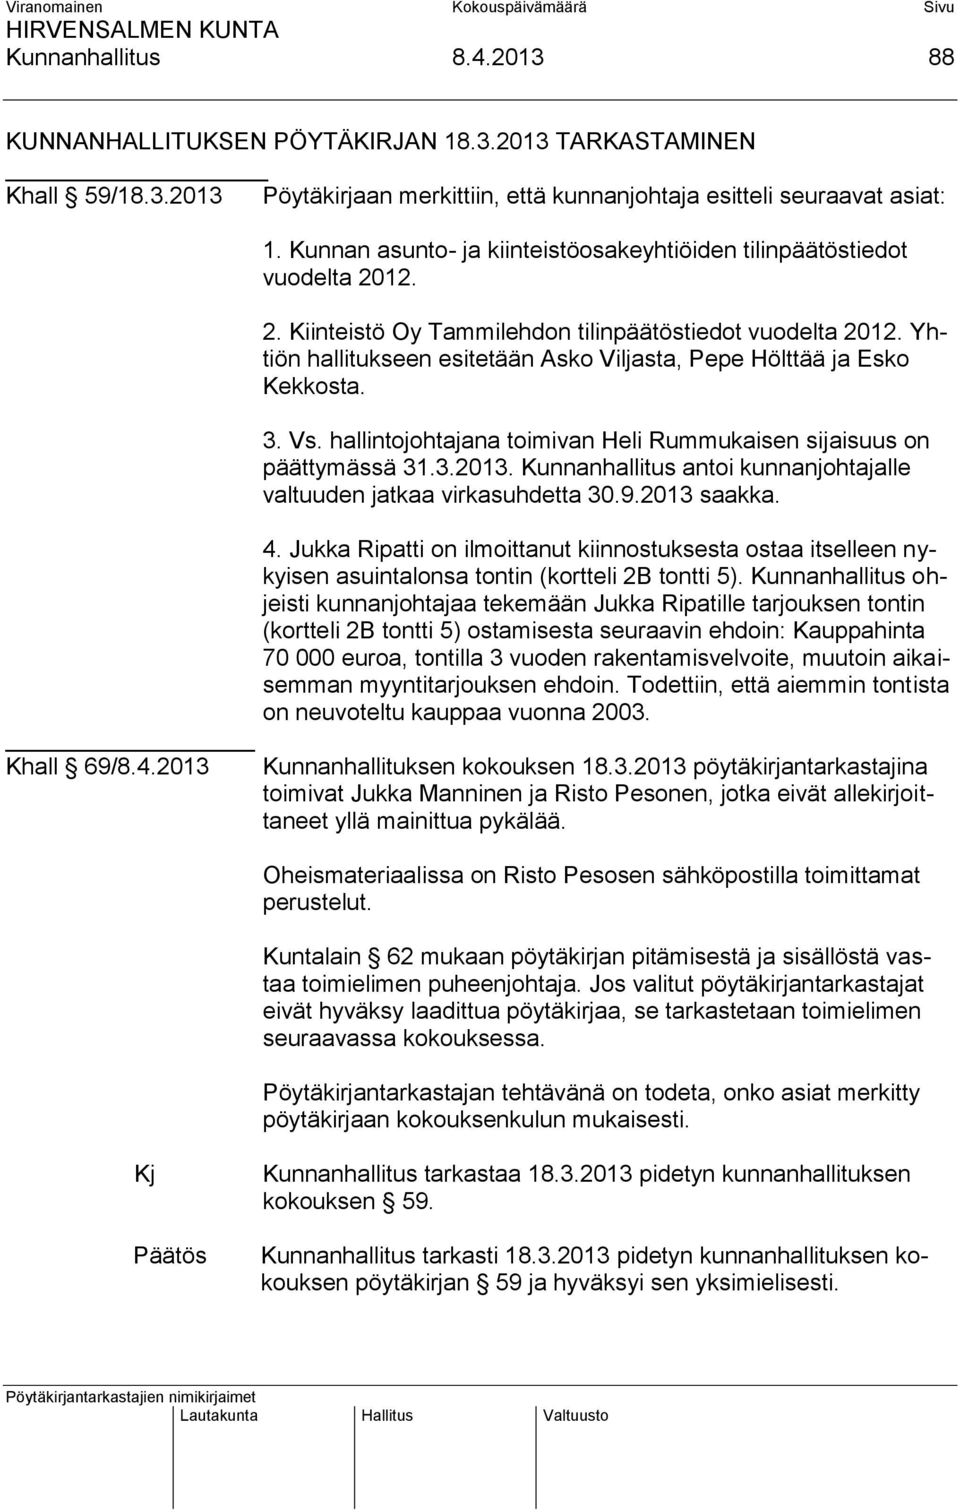 Yhtiön hallitukseen esitetään Asko Viljasta, Pepe Hölttää ja Esko Kekkosta. 3. Vs. hallintojohtajana toimivan Heli Rummukaisen sijaisuus on päättymässä 31.3.2013.